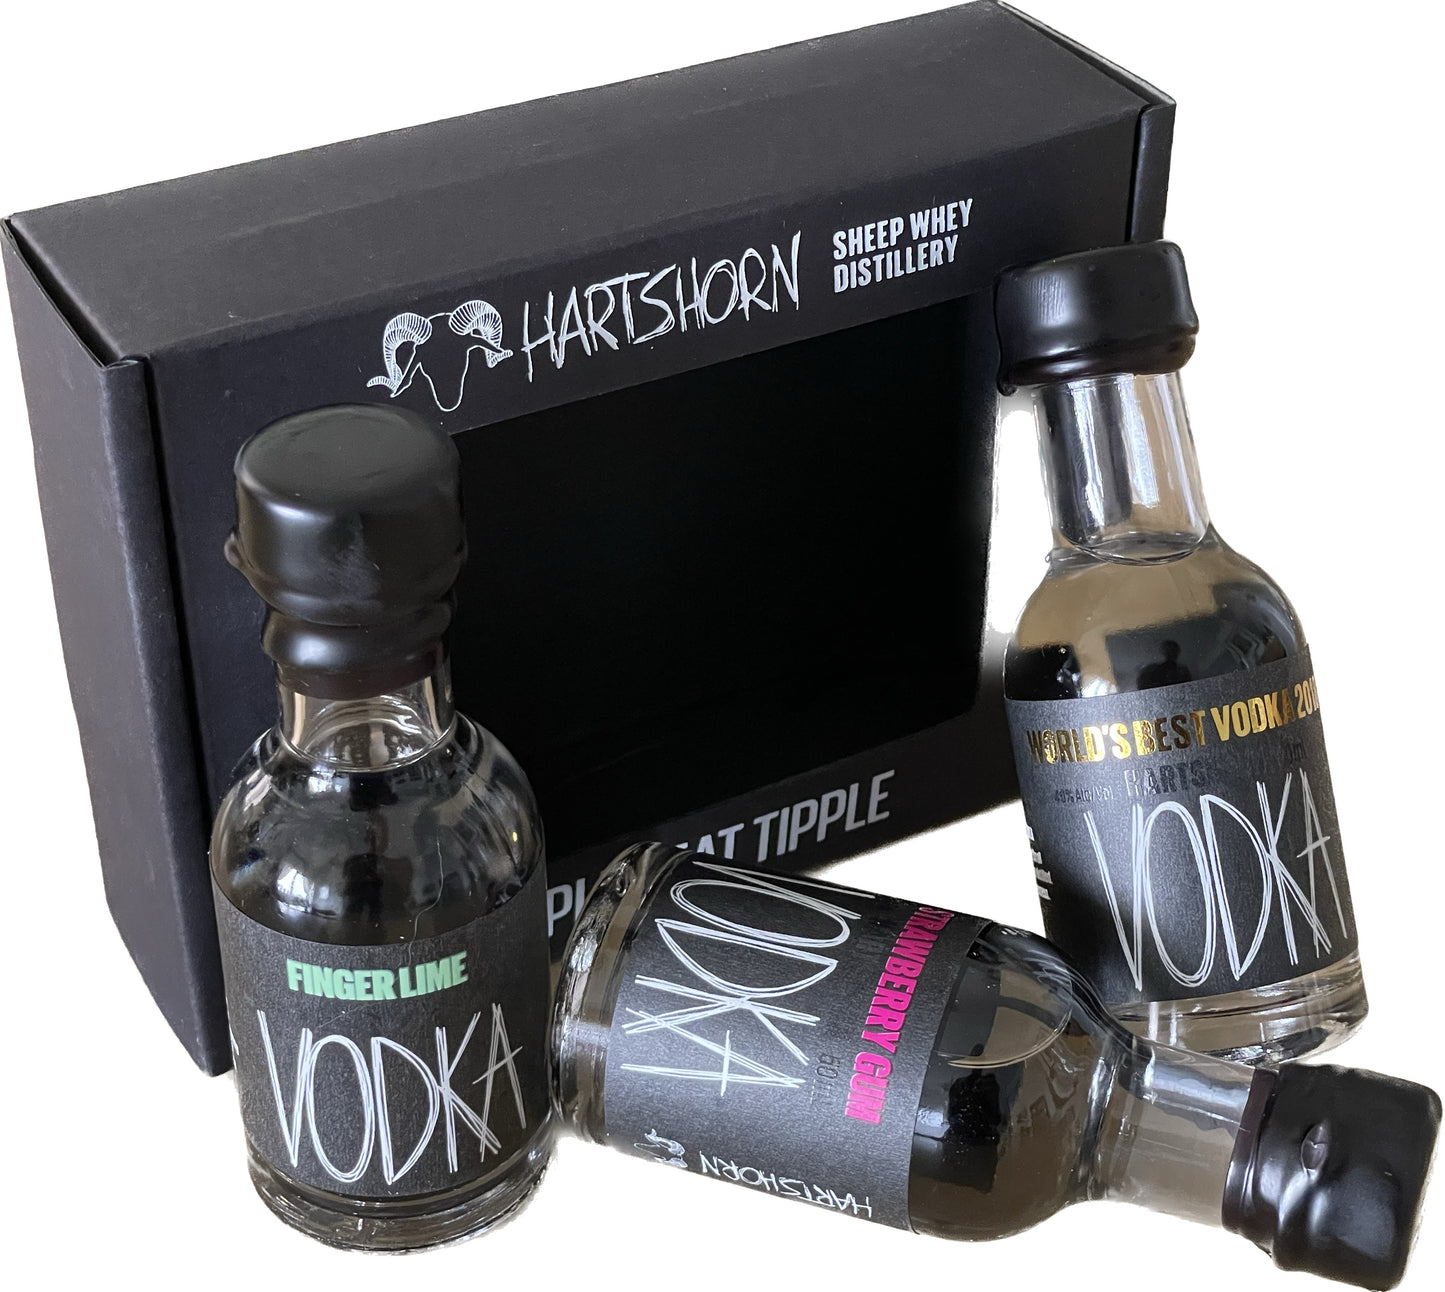 Hartshorn Vodka Triple Tasting Pack 150ml 40% abv